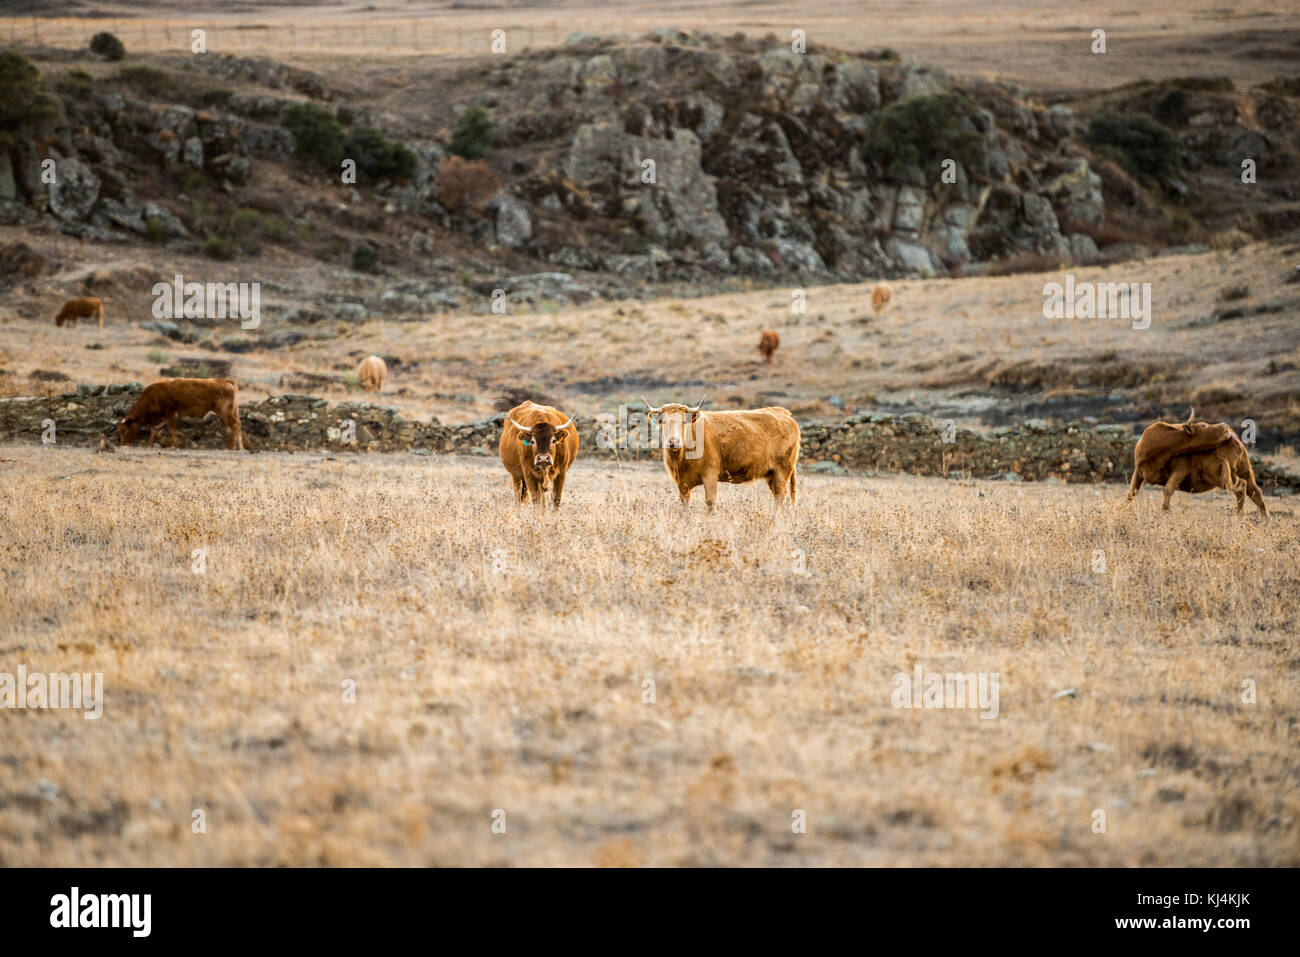 Un groupe de quatre vaches paissent dans un paysage désertique de la steppe pendant une longue période de sécheresse. Cáceres, Extremadura, Espagne. Banque D'Images